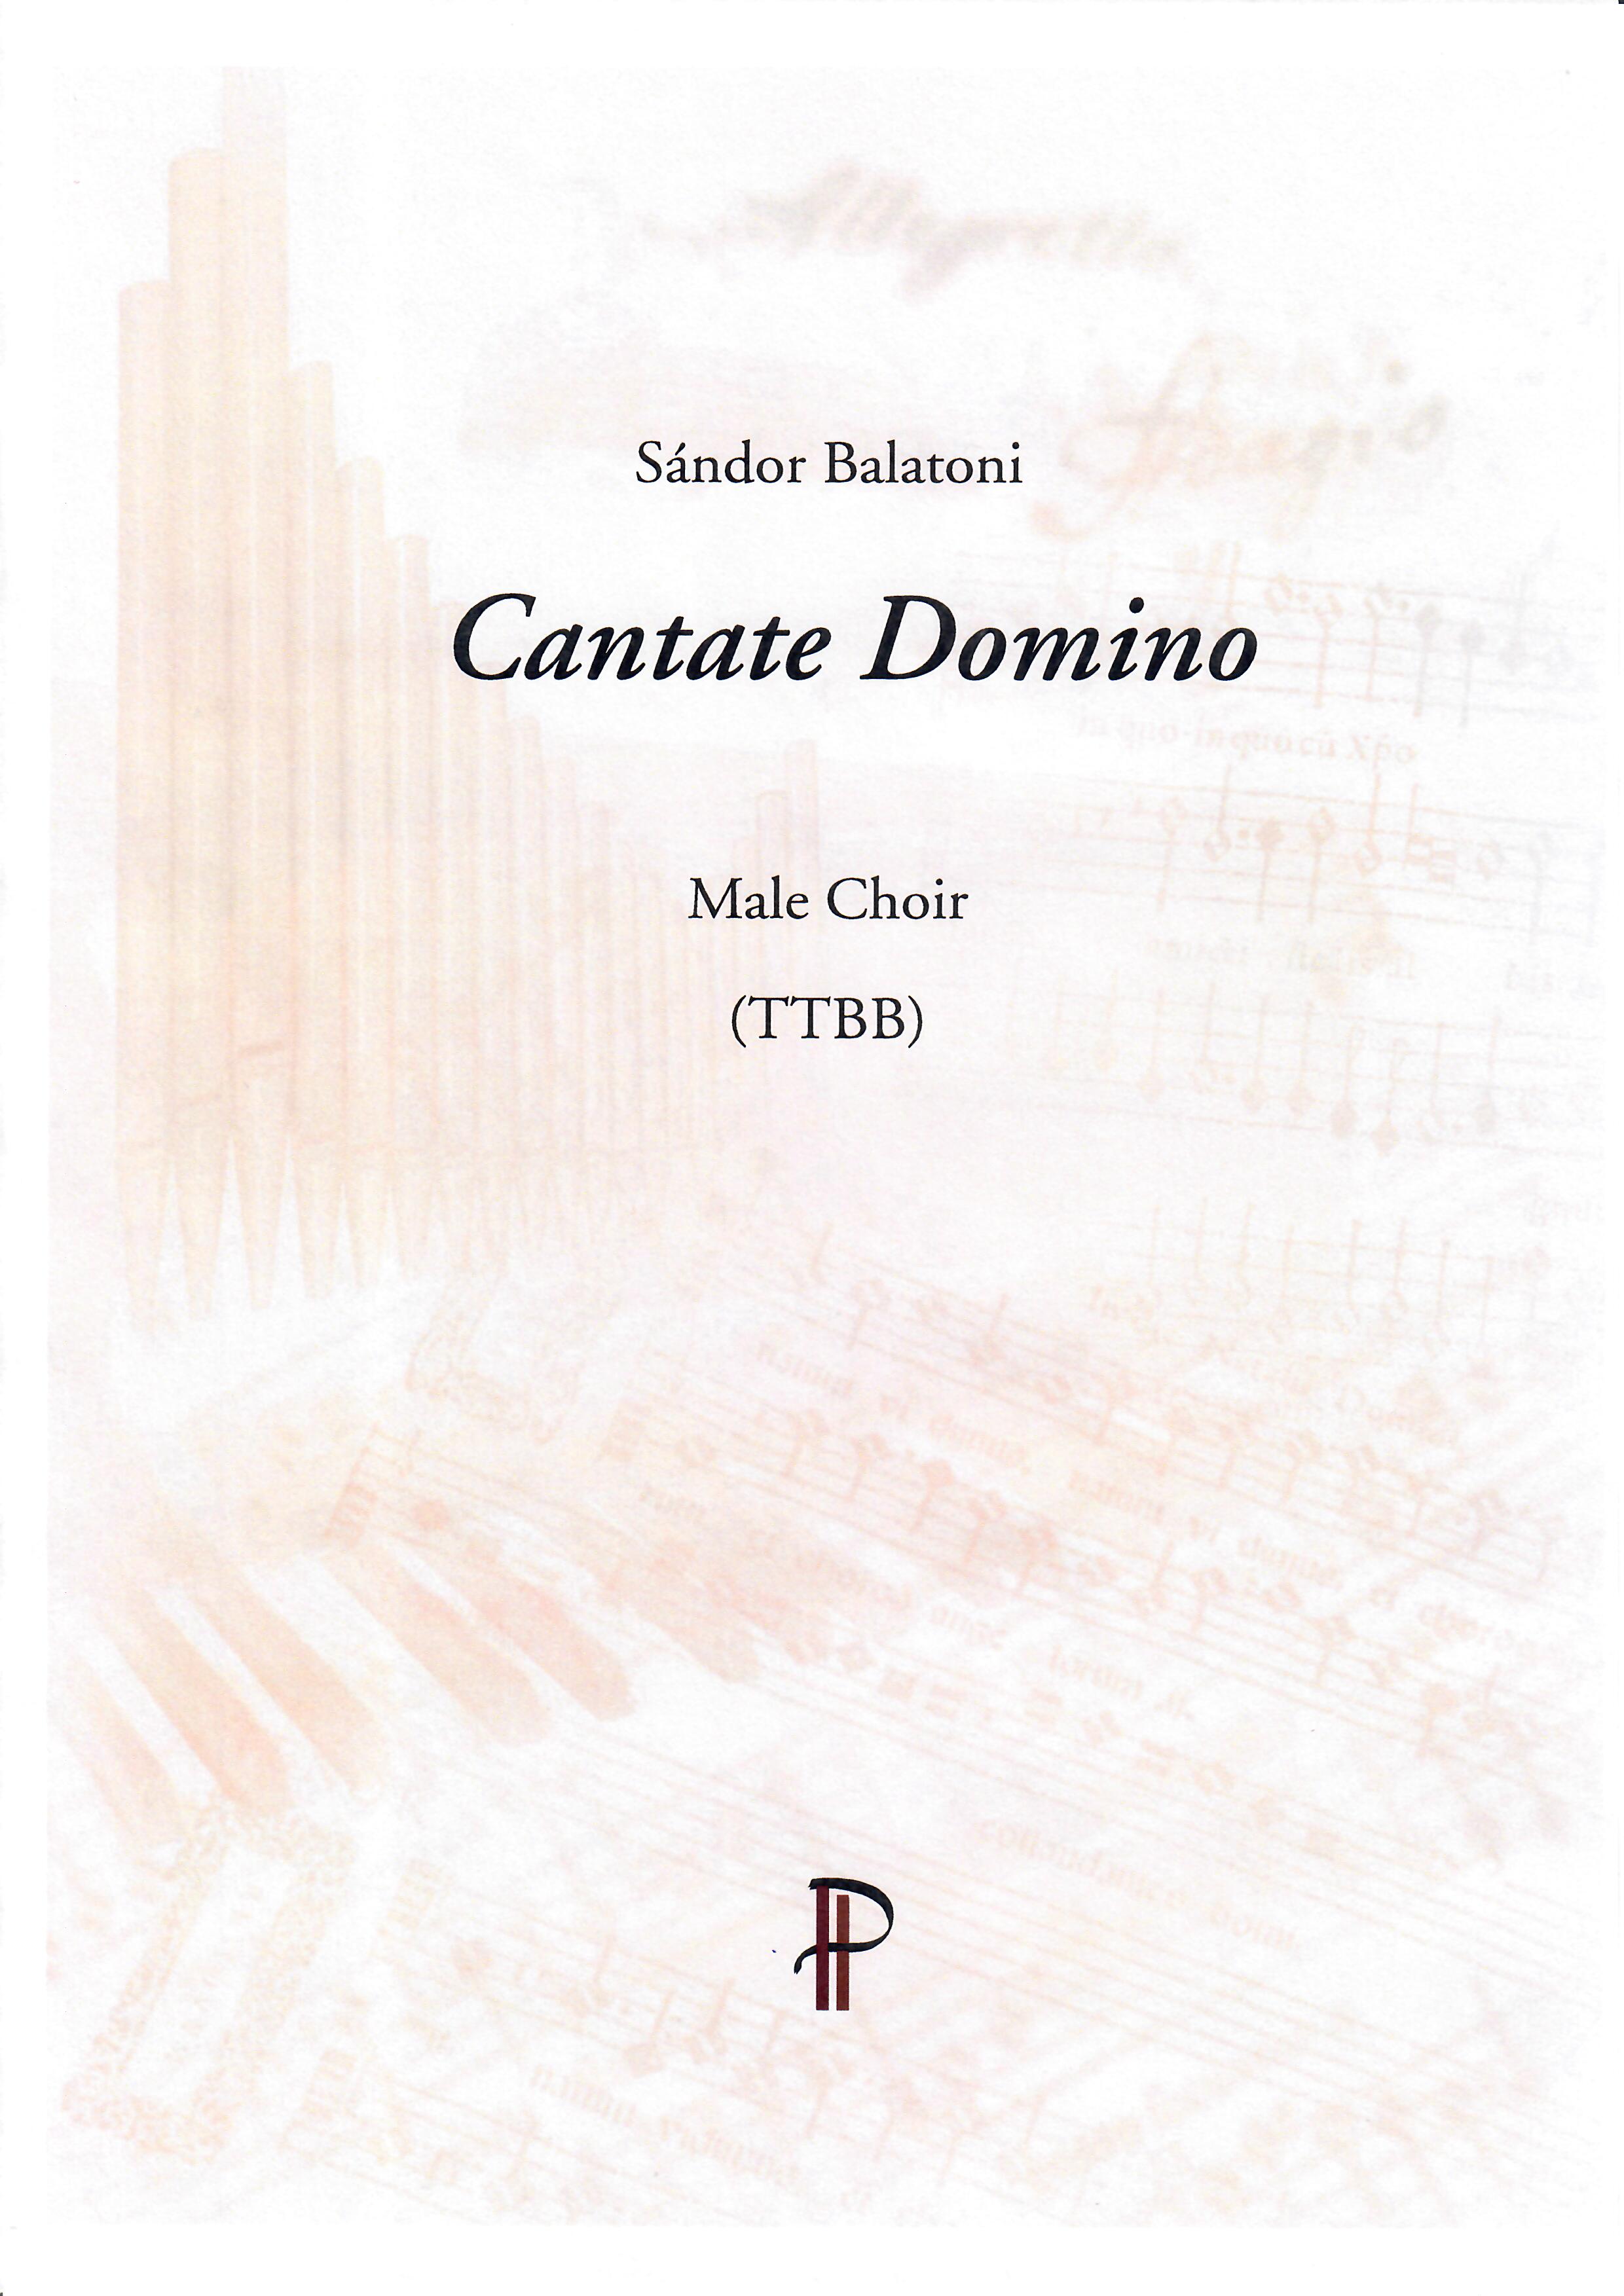 Cantate Domino - Show sample score